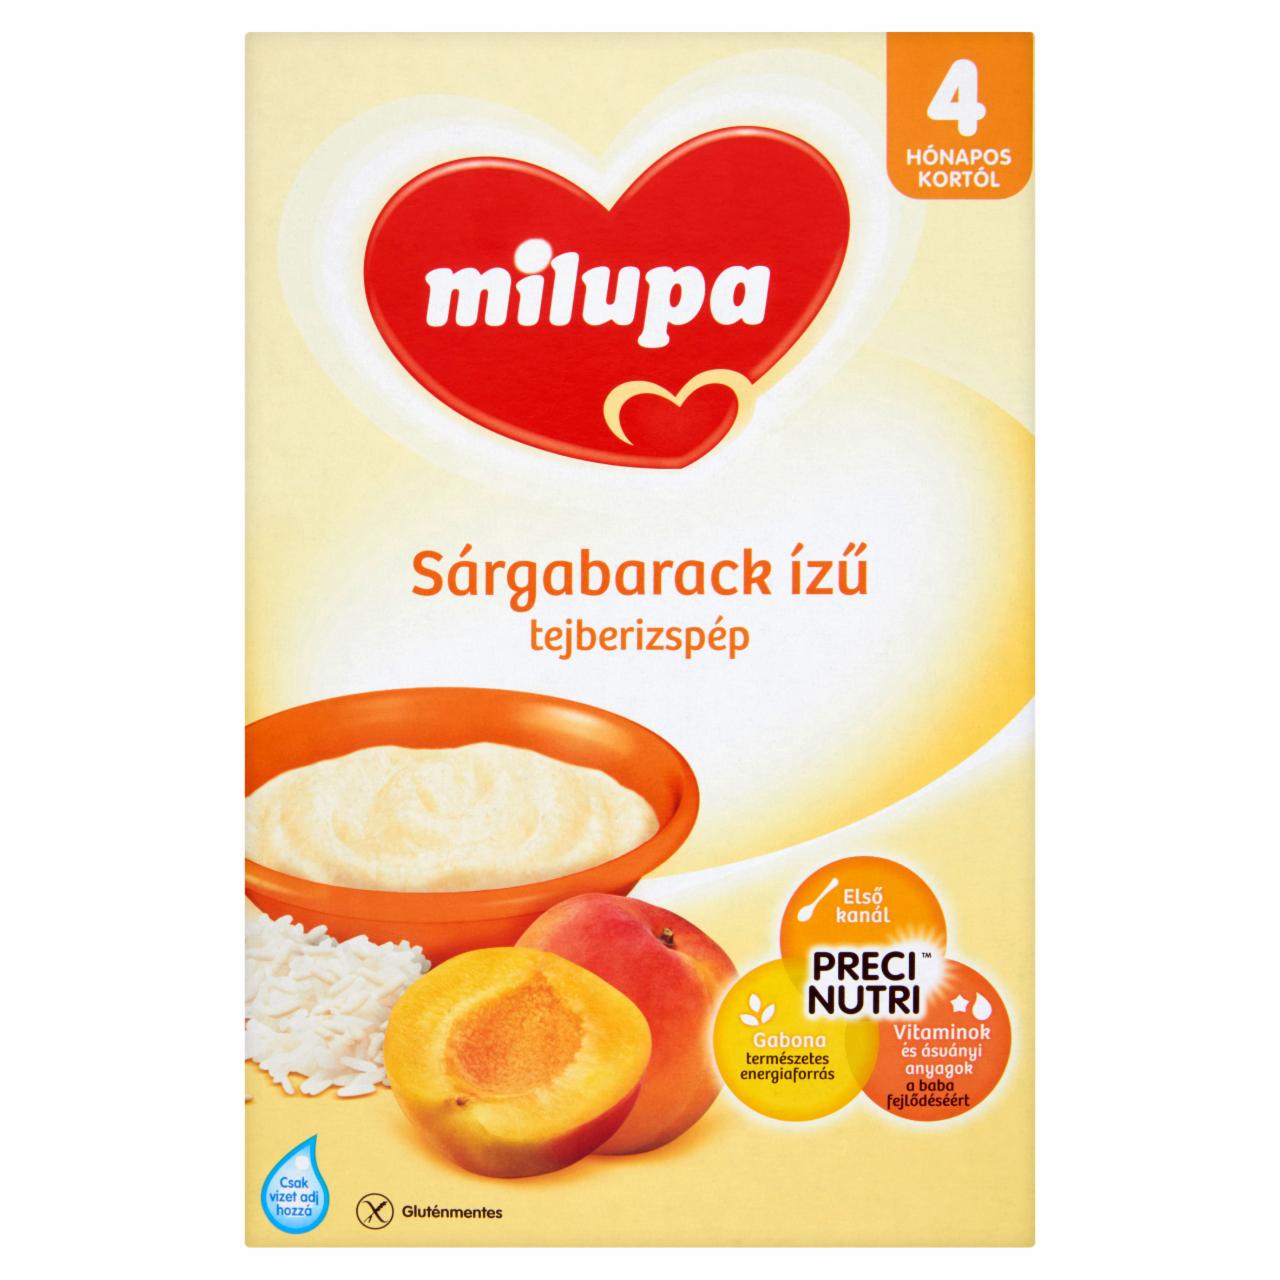 Képek - Milupa sárgabarack ízű tejberizspép 4 hónapos kortól 250 g